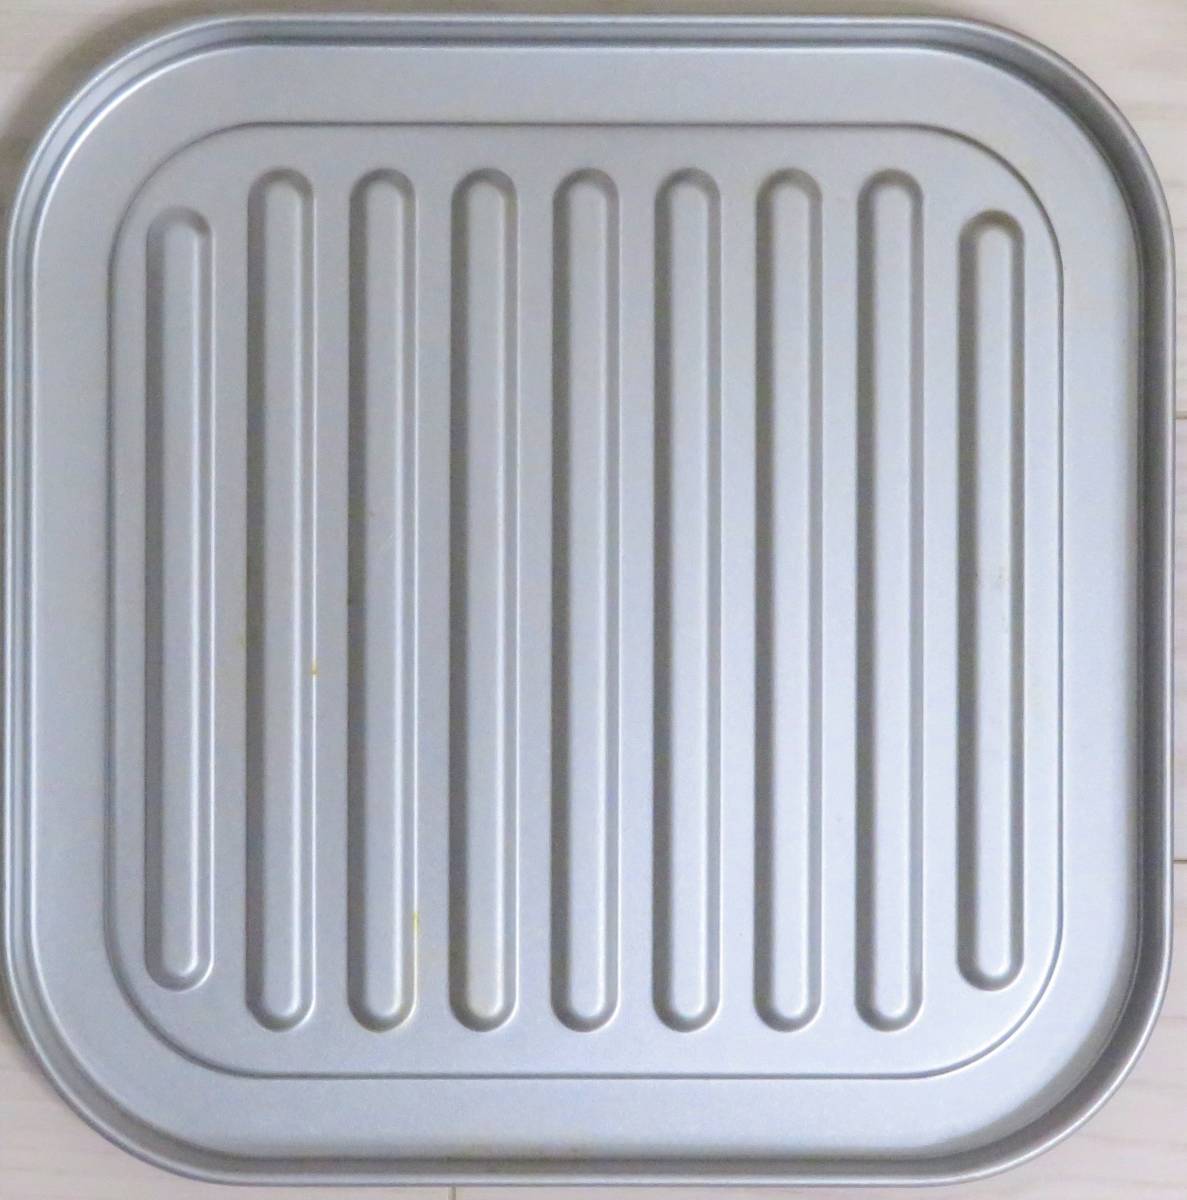 パナソニック トースター オーブントースター 4枚焼き対応 30分タイマー搭載 ホワイト NT-T501-W 使用品 美品 同梱不可_画像4